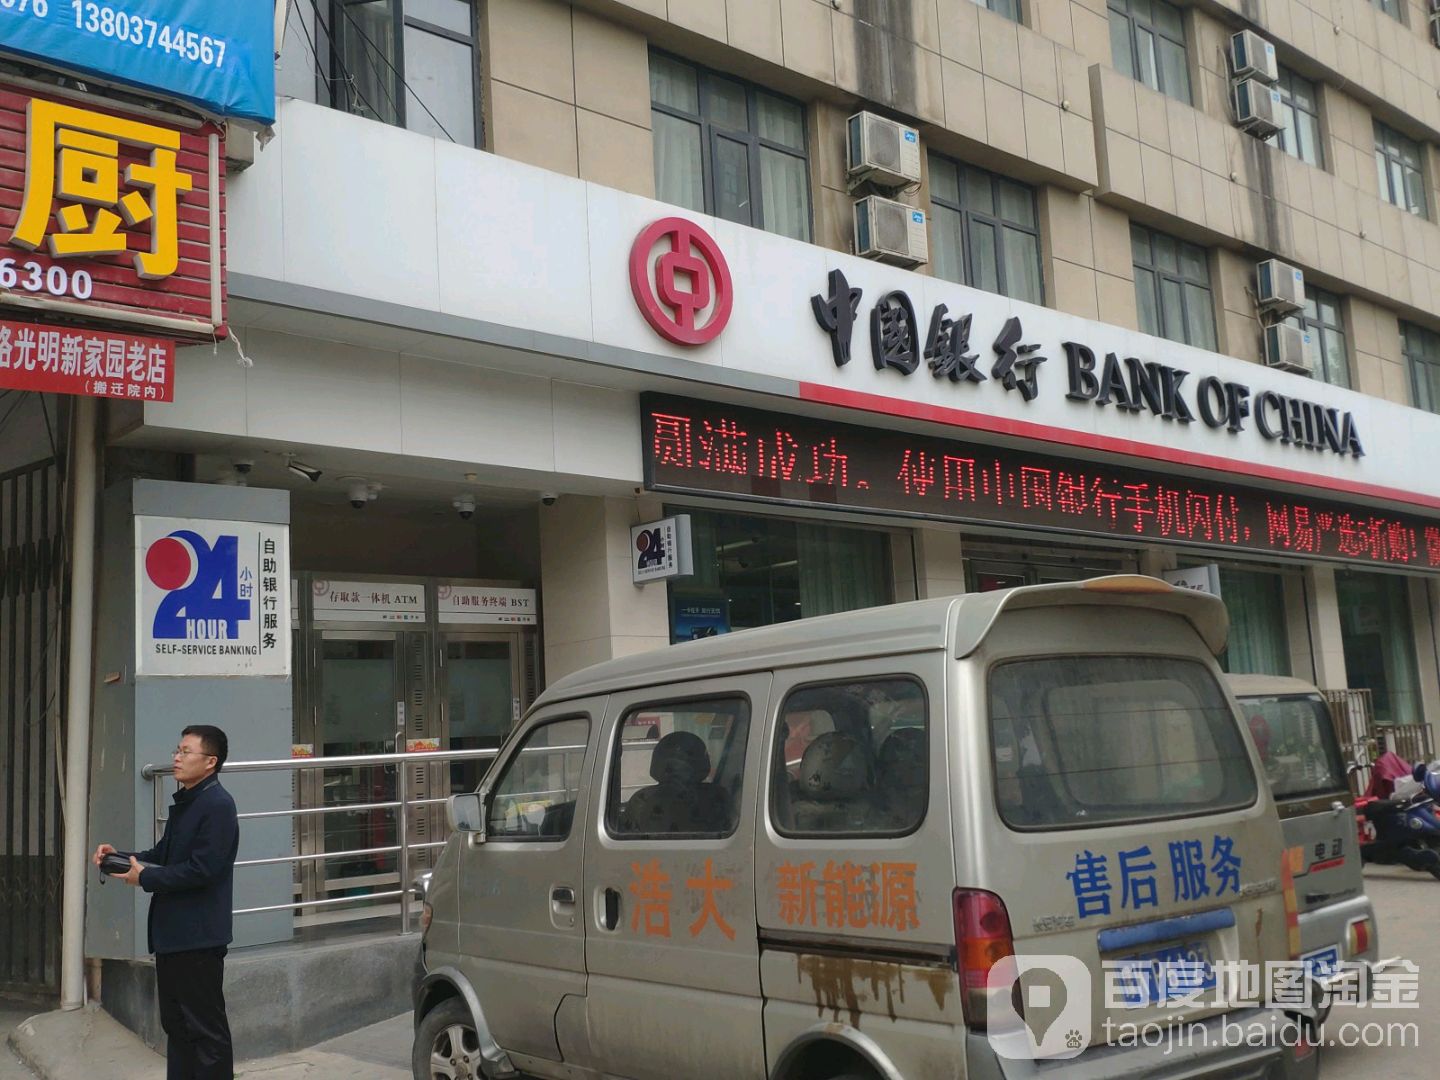 中国银行24小时自助银行(新许文峰路支行)